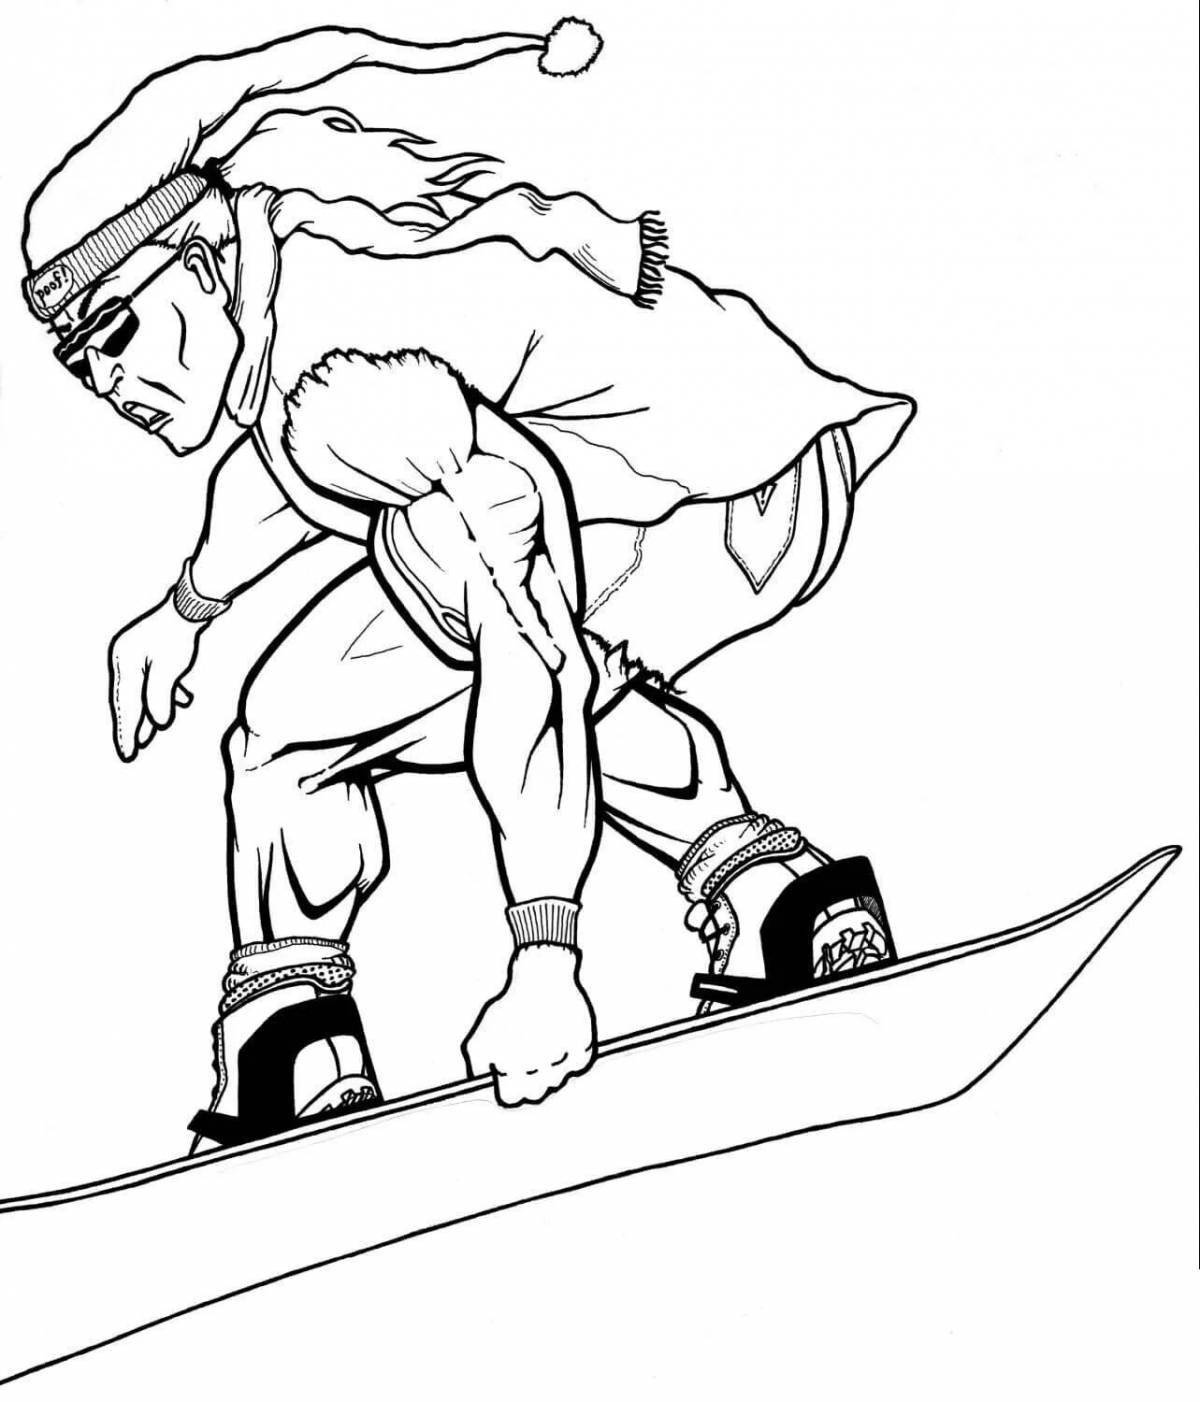 Сказочная страница раскраски сноуборда для детей